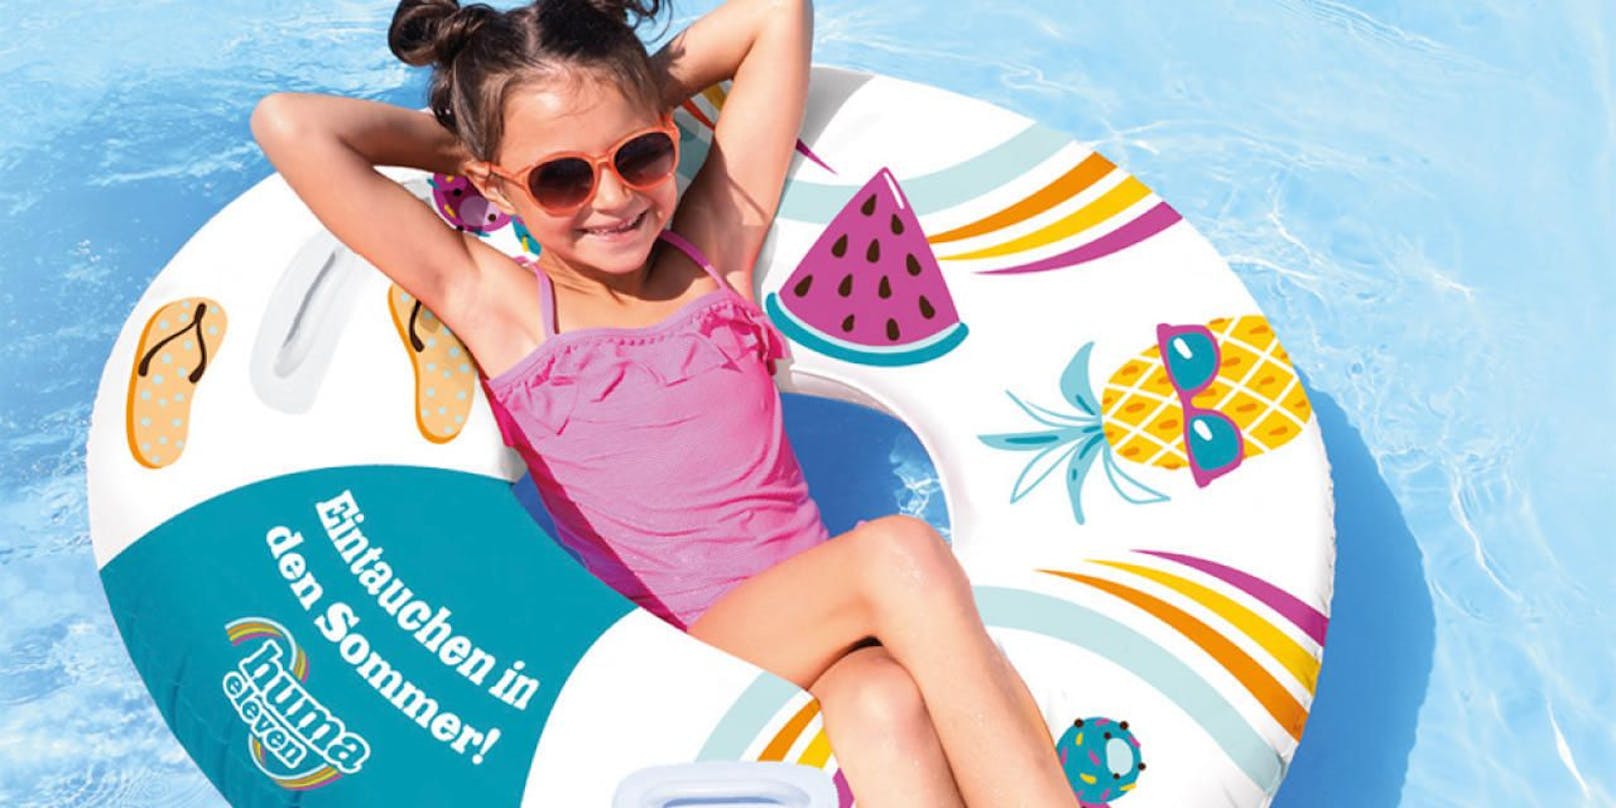 Zeige Dein Schulzeugnis am 28. Juni im HUMA ELEVEN &amp; nimm einen sommerlich-bunten XL-Schwimmreifen mit nach Hause!